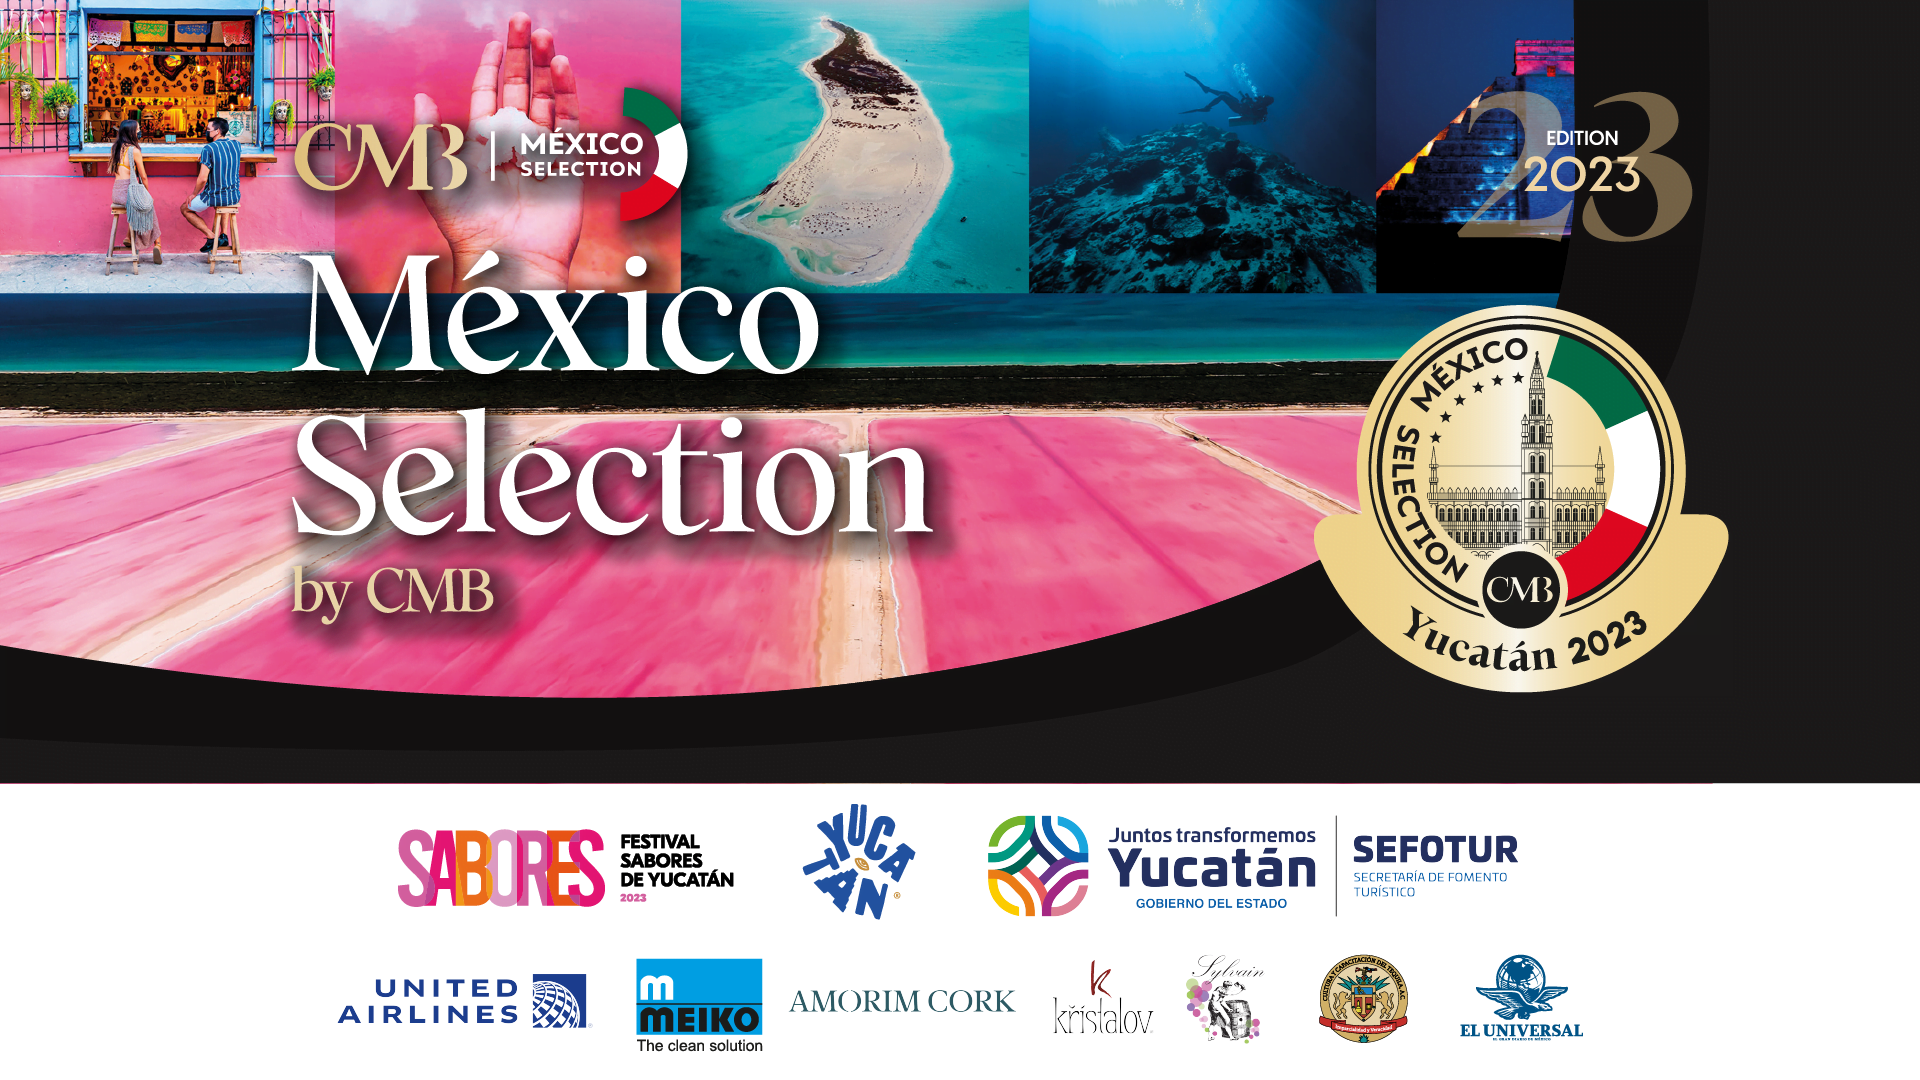 México Selection by CMB Yucatán 2023: ¡Se trata de la cata a ciegas de vinos y espirituosos mexicanos más grande jamás realizada!